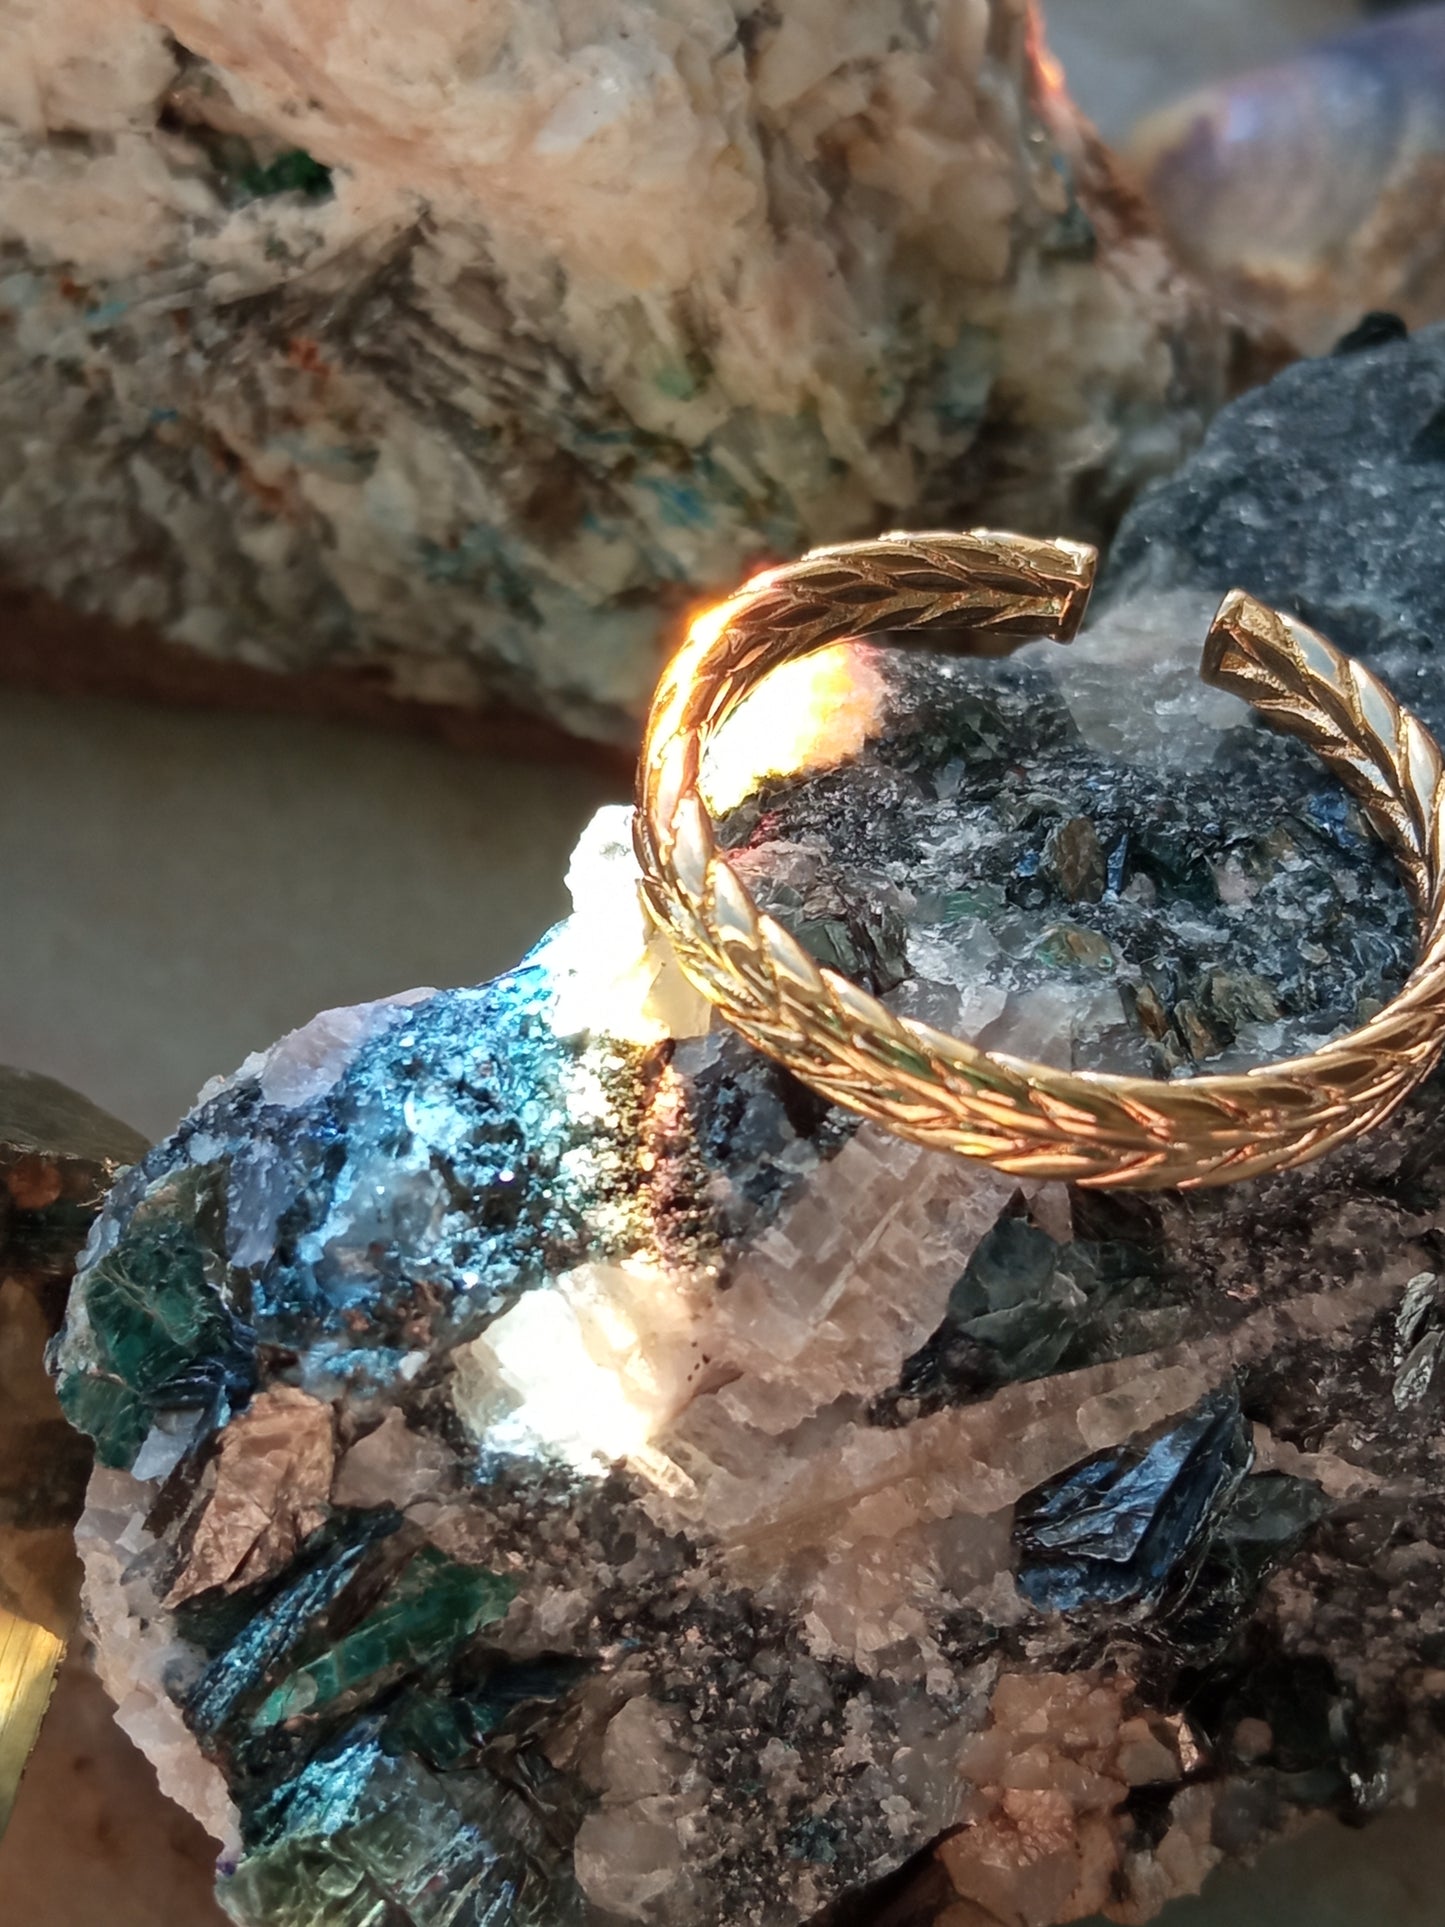 Gold plated ring, Marina